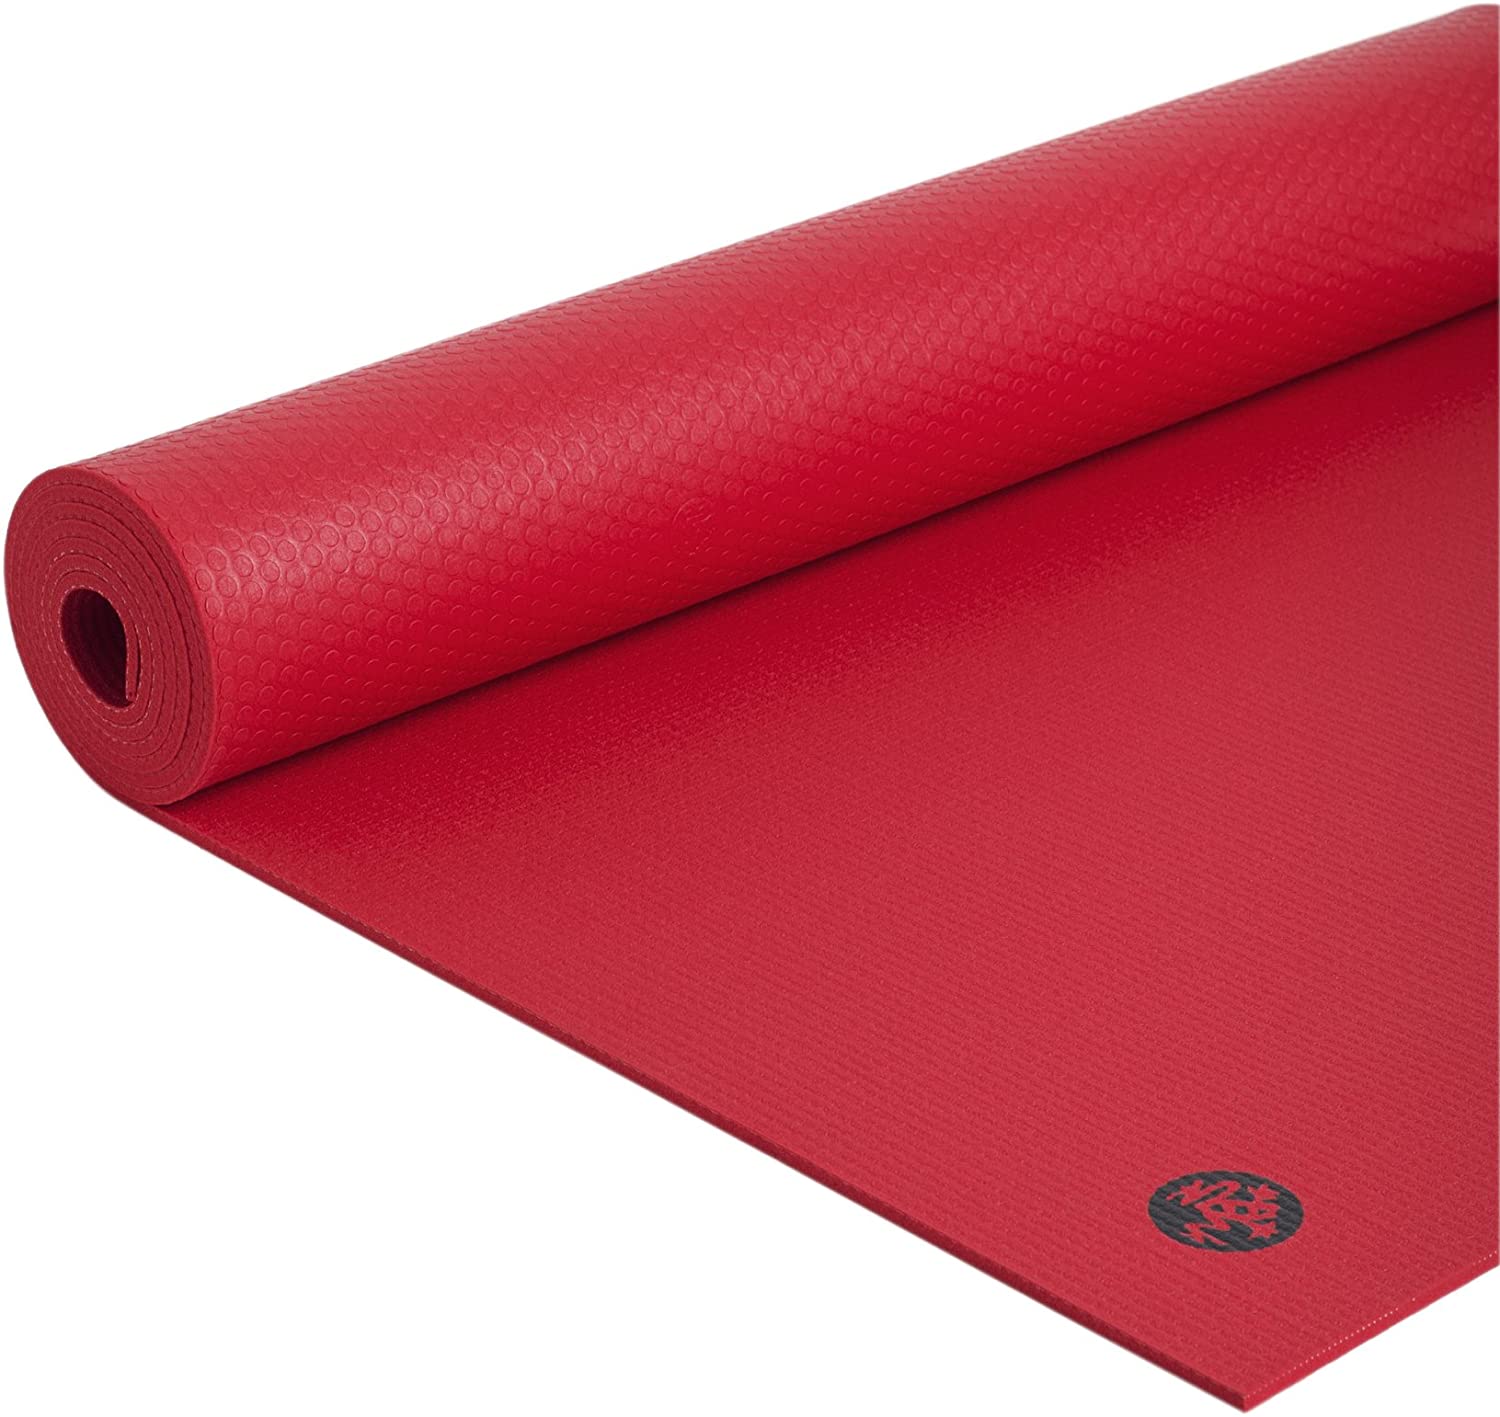  Gaiam Essentials Thick Yoga Mat Fitness & Exercise